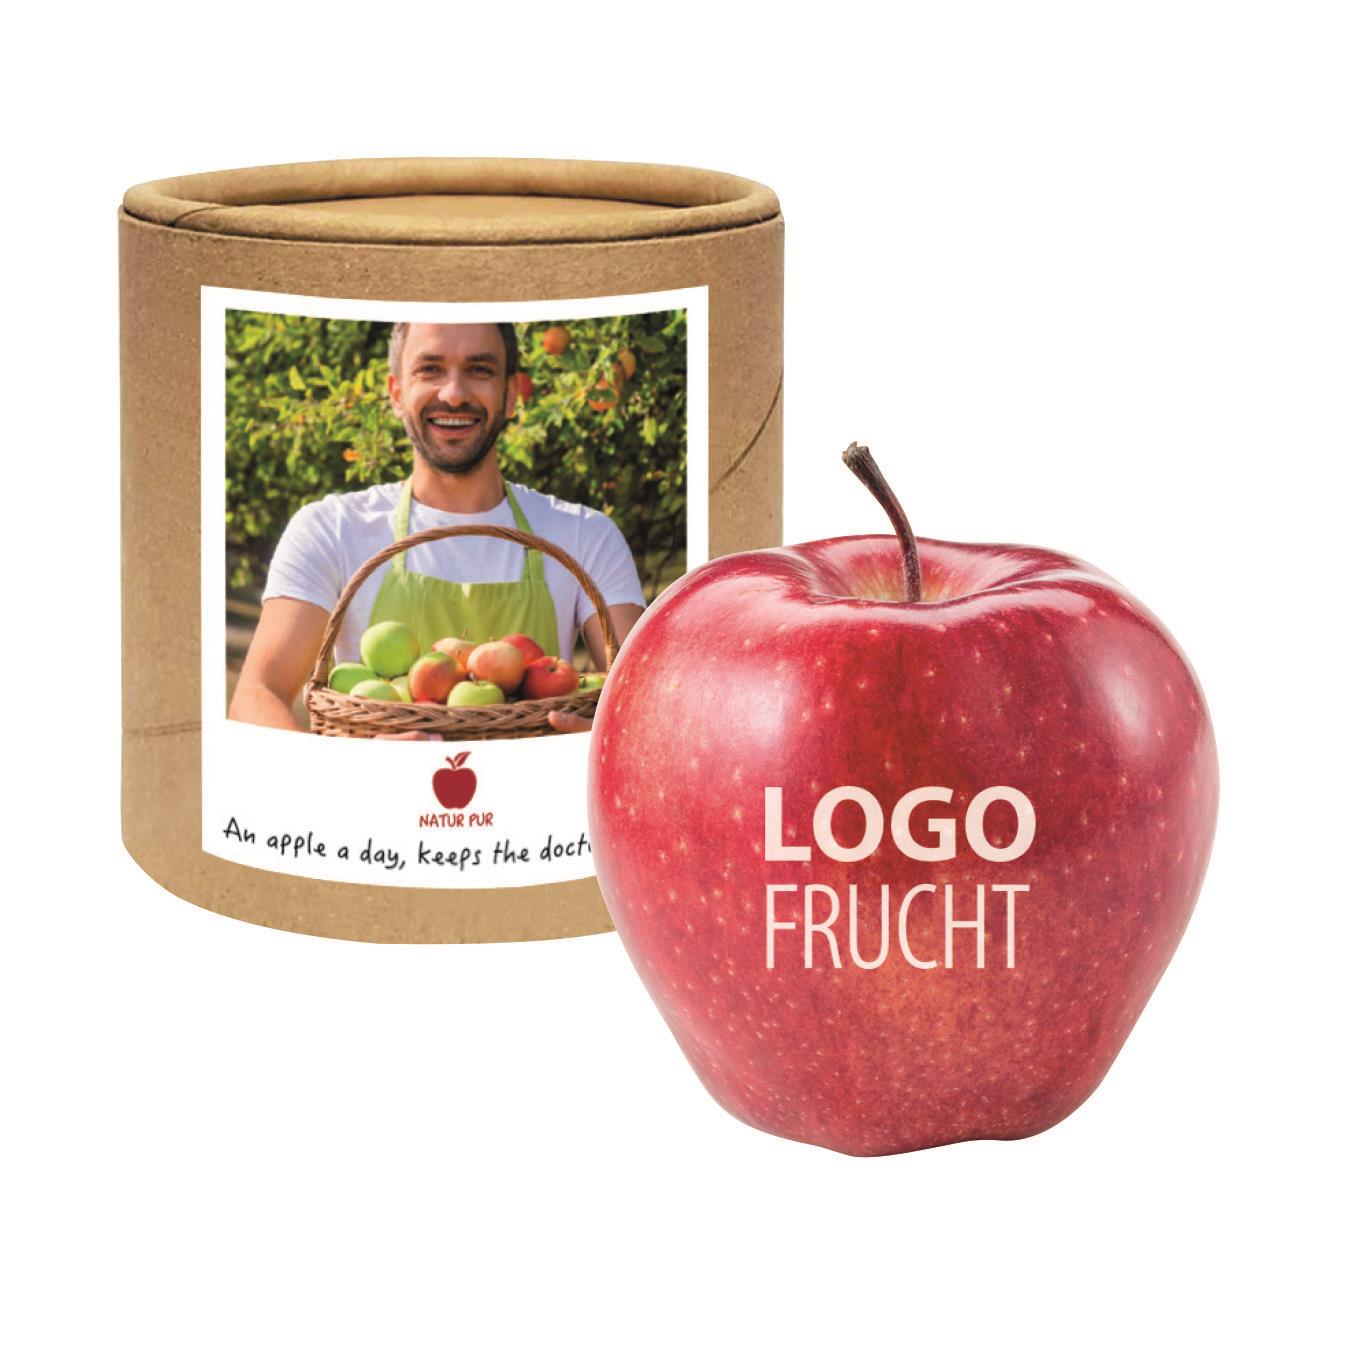 LogoFrucht Apfel in der Box